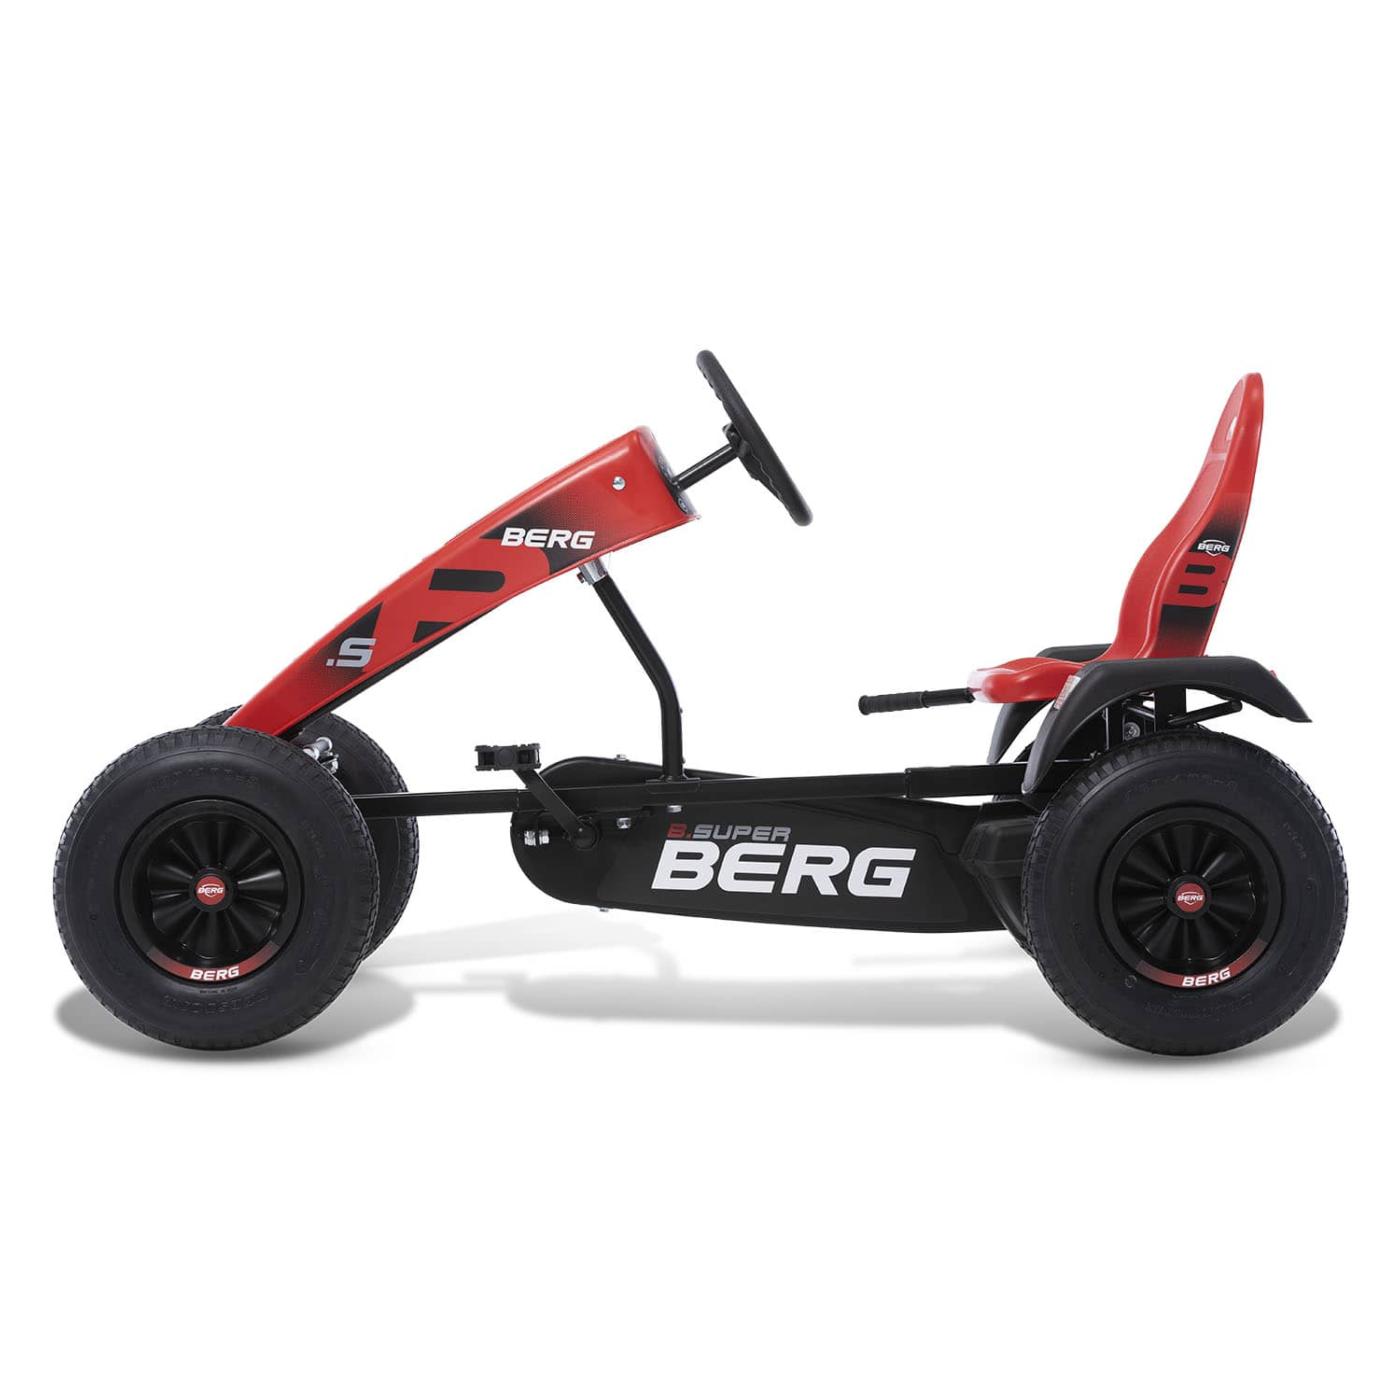 Coche de pedales BERG XL B.Super Red BFR 